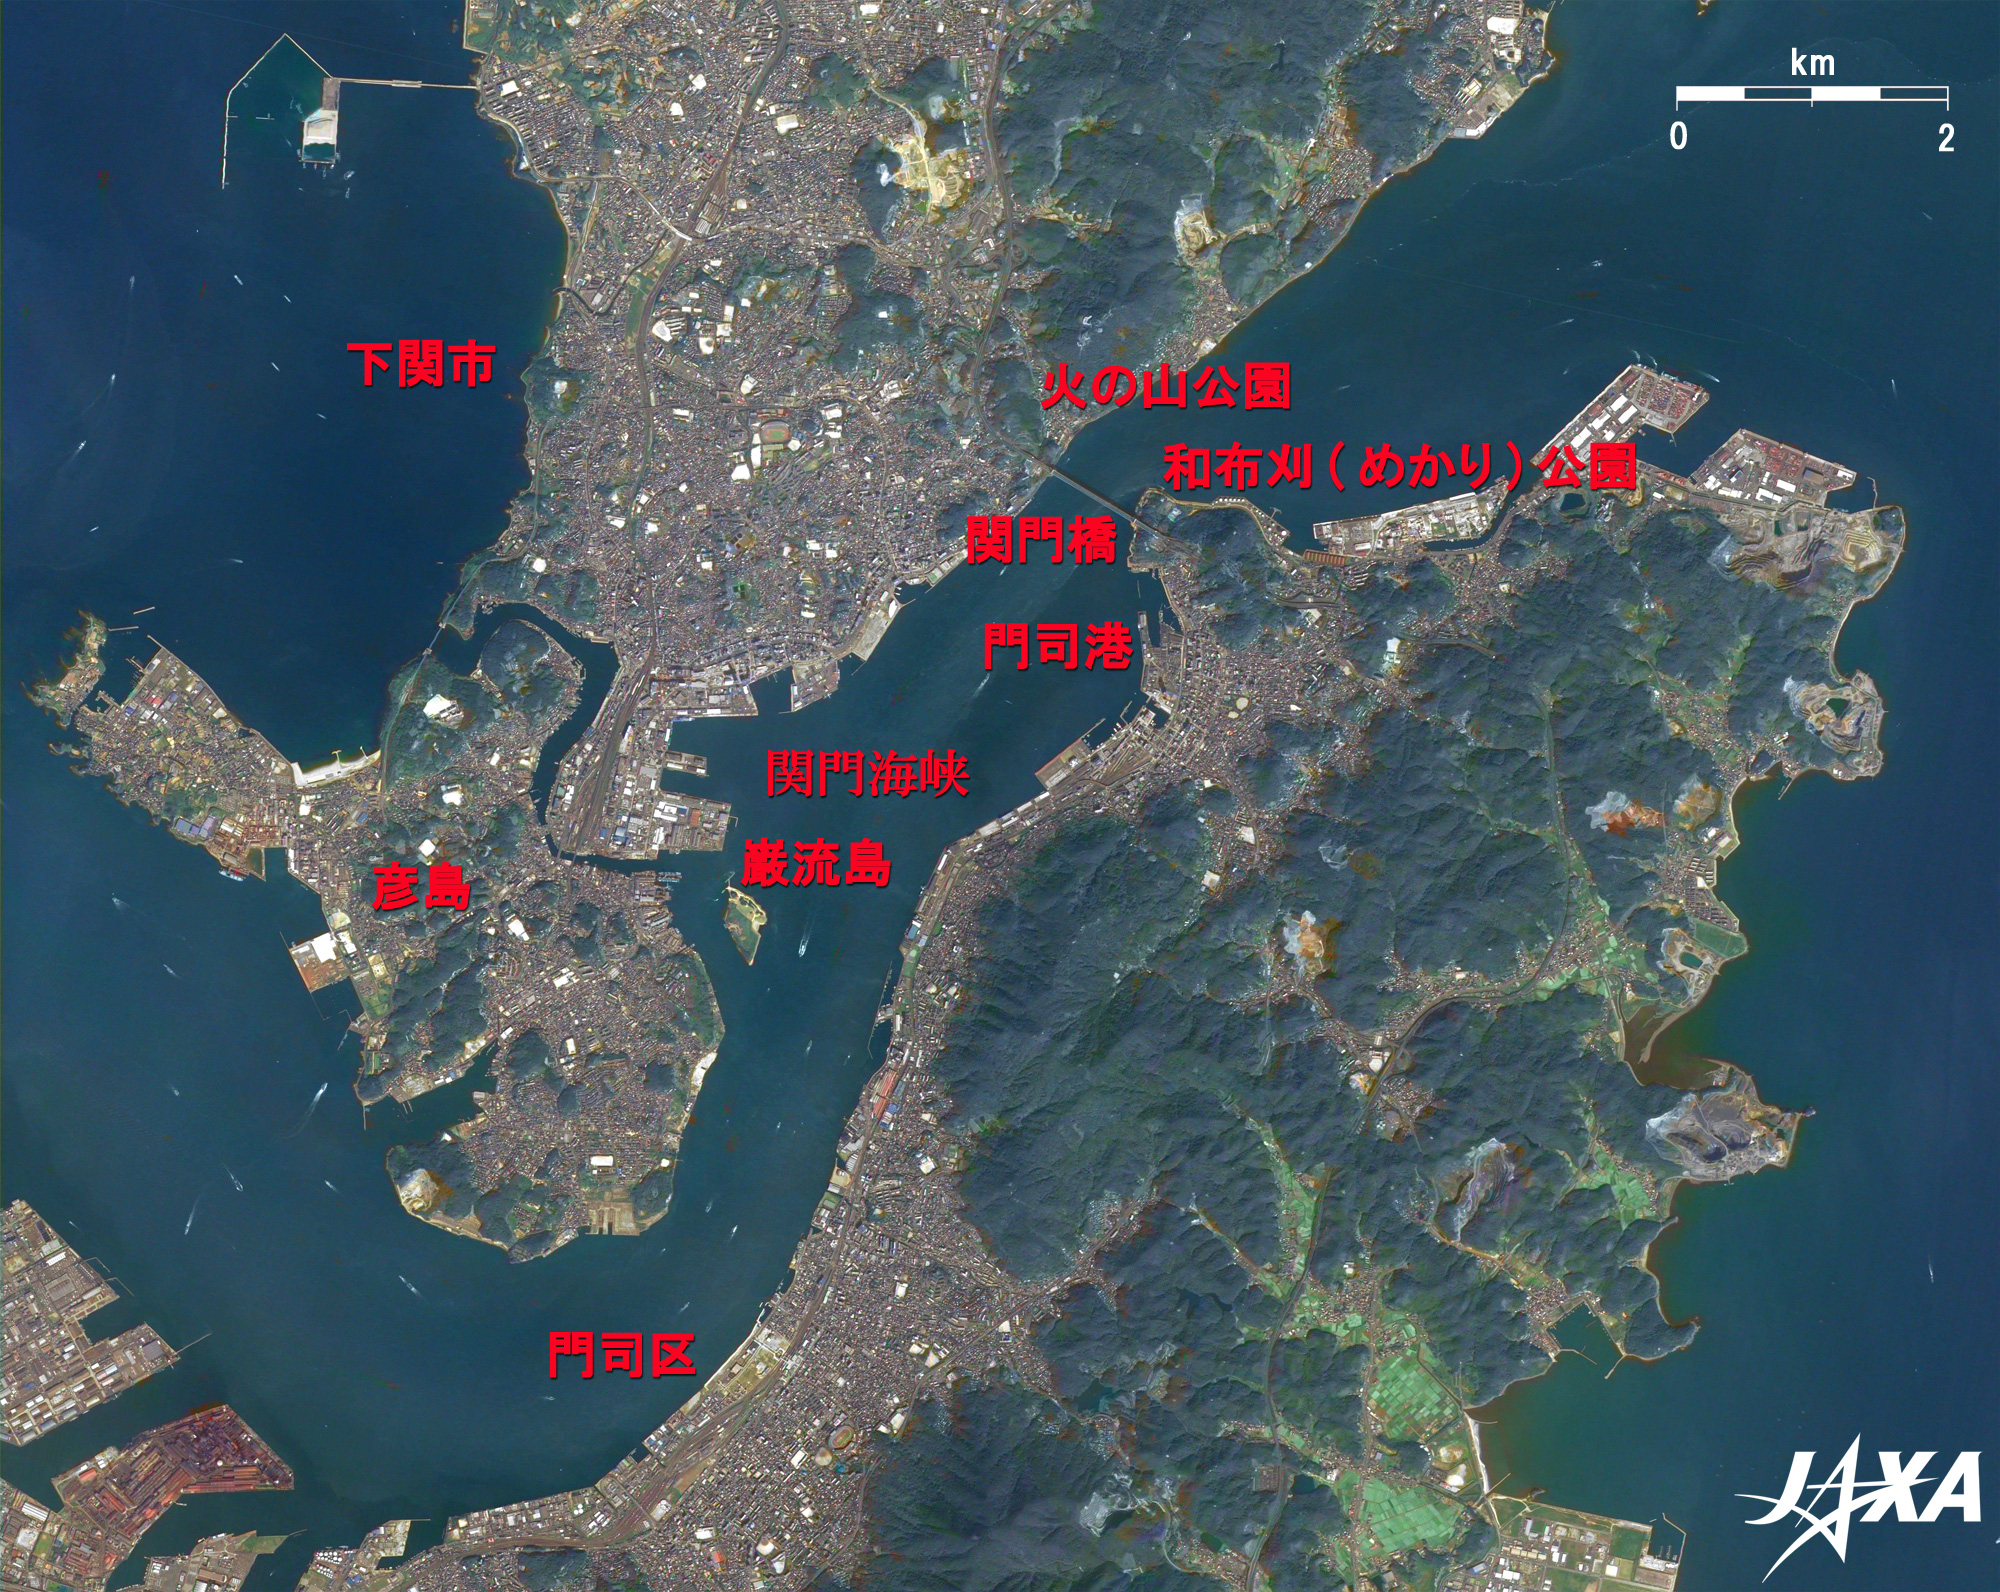 関門海峡で出会う街 北九州と下関 地球が見える Jaxa 第一宇宙技術部門 地球観測研究センター Eorc